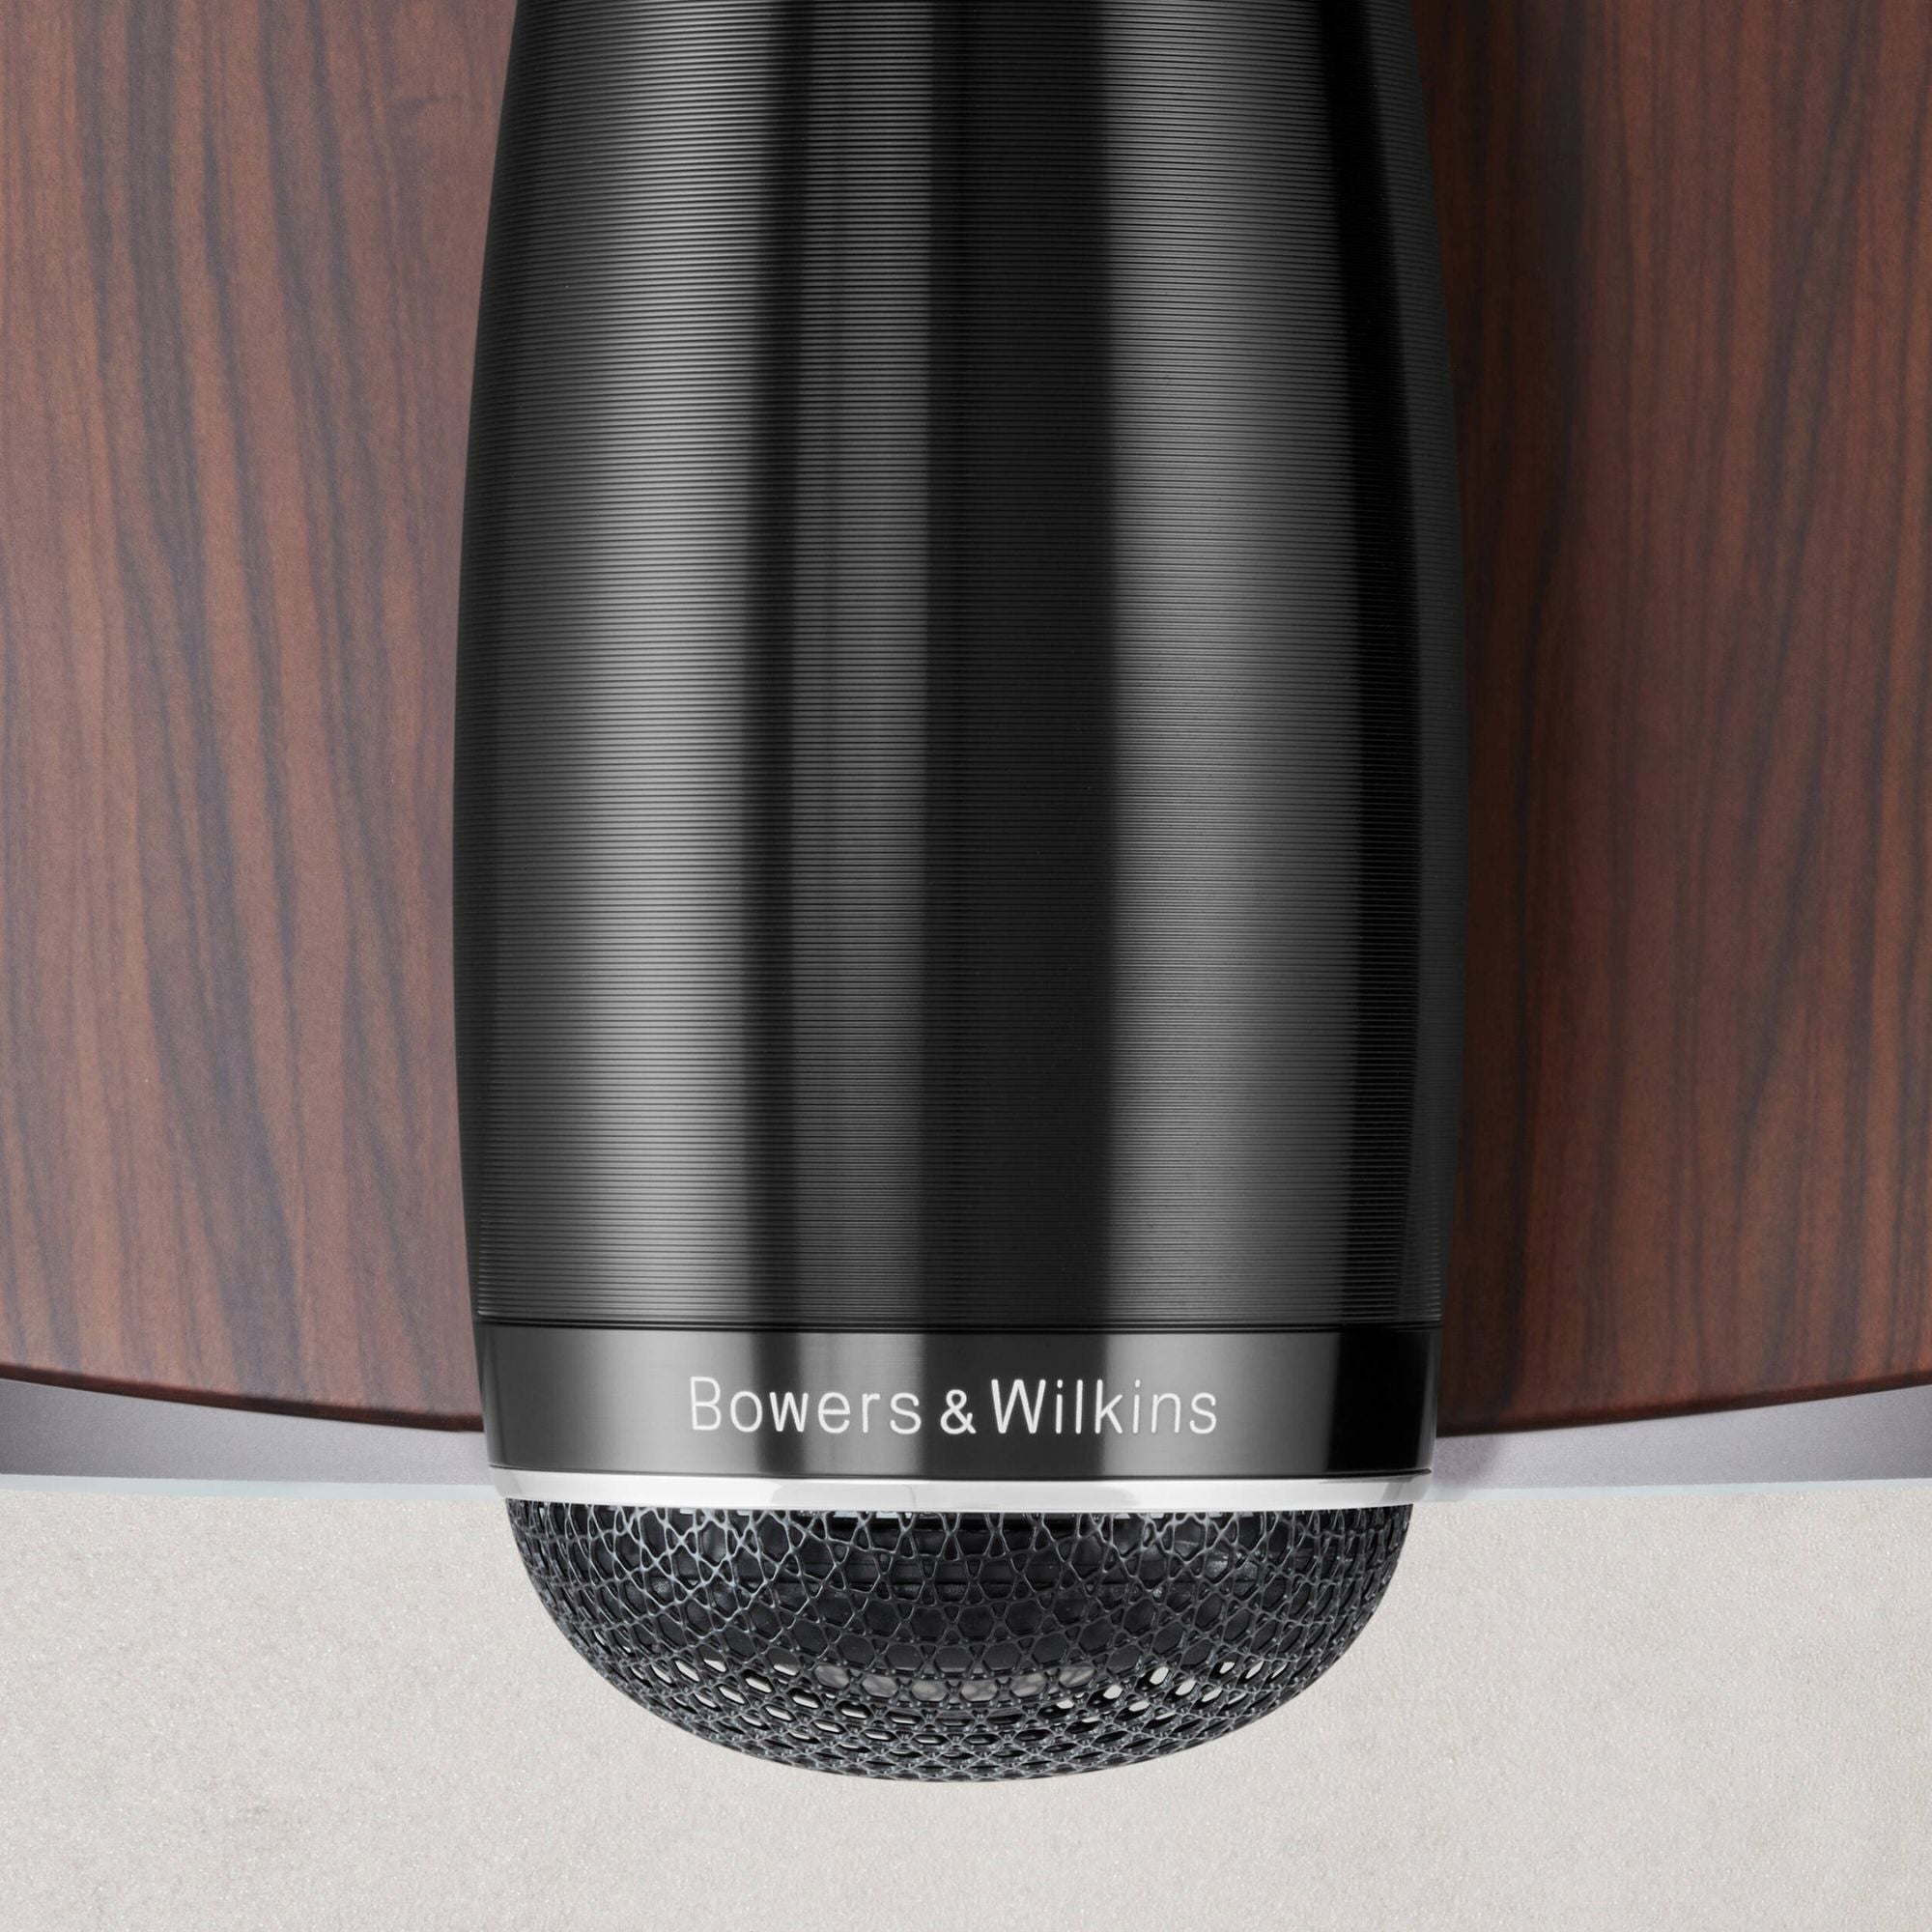 Bowers & Wilkins 703 S3 -  Floor Standing Speaker - Pair, Bowers & Wilkins, Floor Standing Speaker - AVStore.in